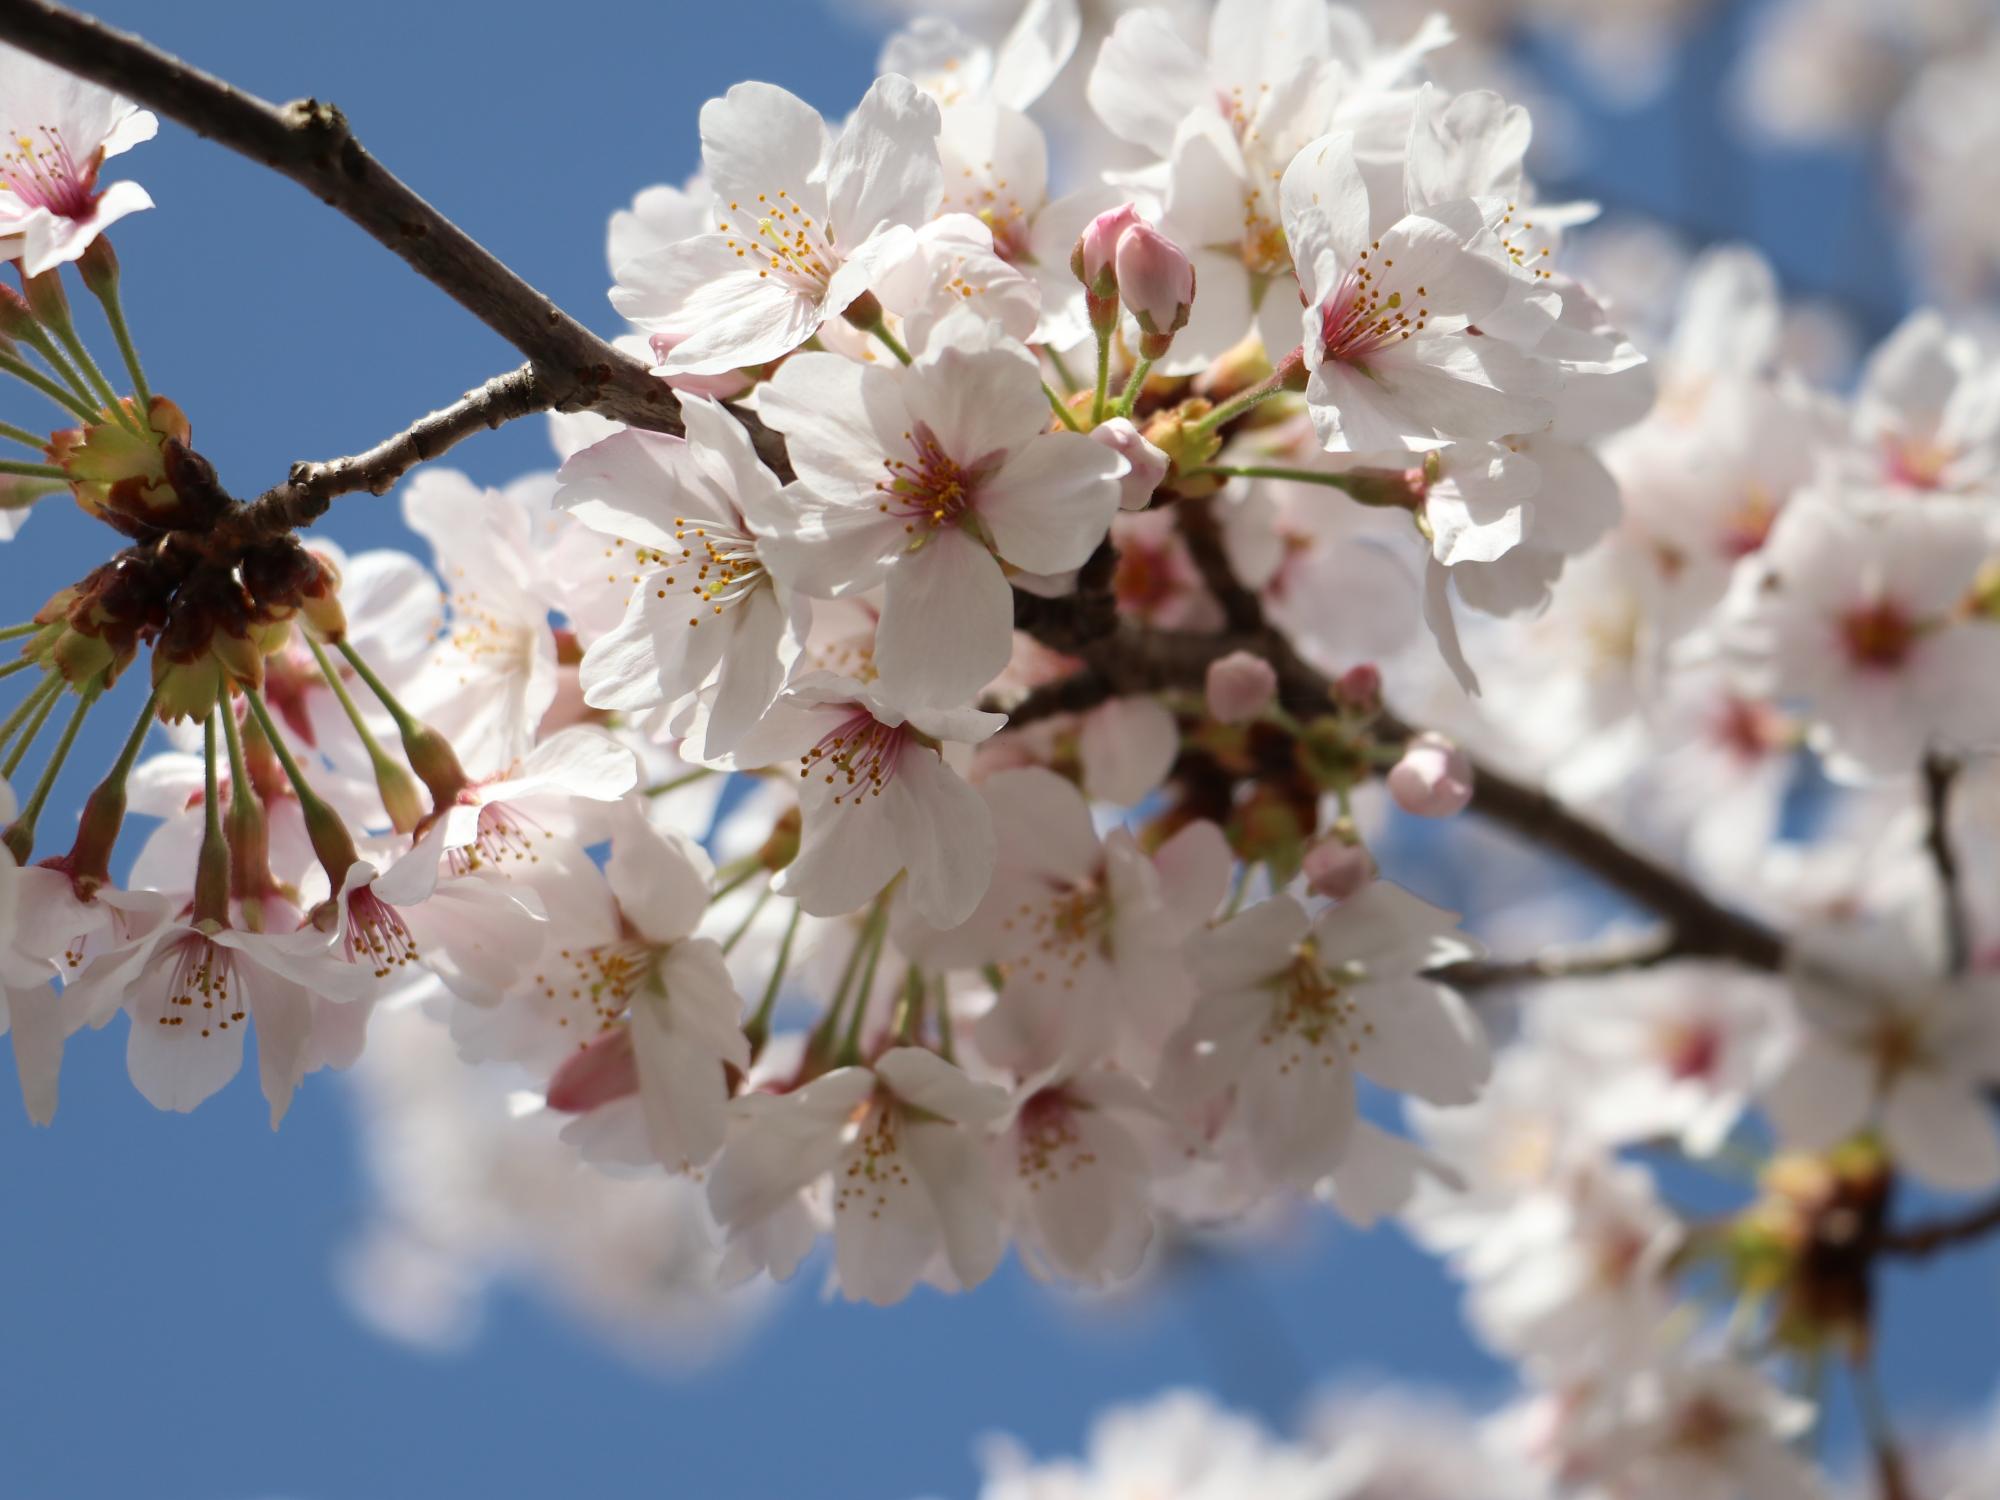 満開に咲いた桜の花びらのアップ